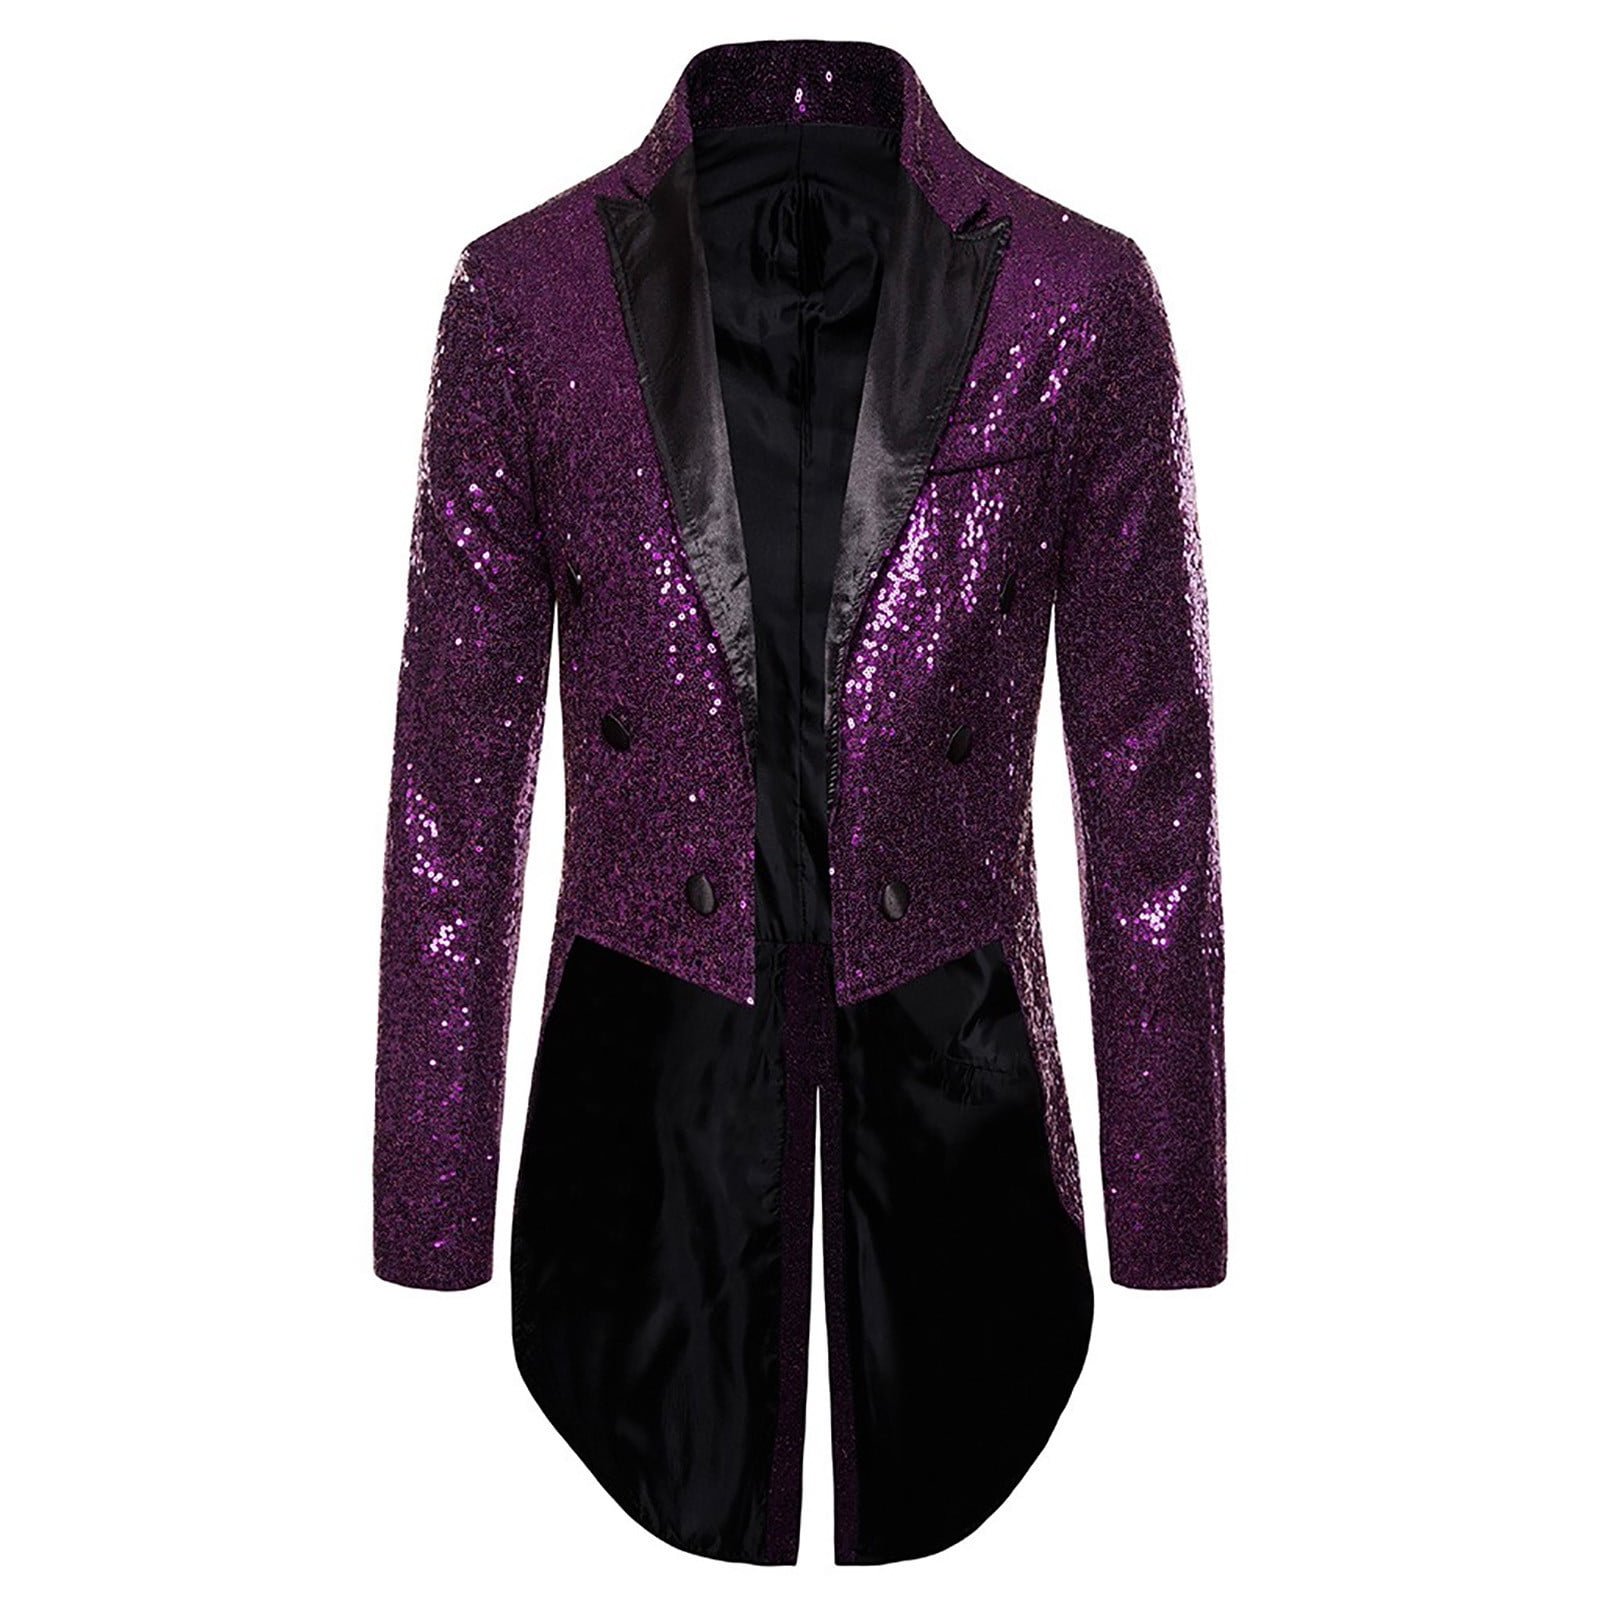 SMihono Winter Fall Men's Color Matching Sequin Suit, One Button Dress,  Performance Suit, Long Sleeved Lapel Collar Suit Jacket Coat Blazer Purple  4 